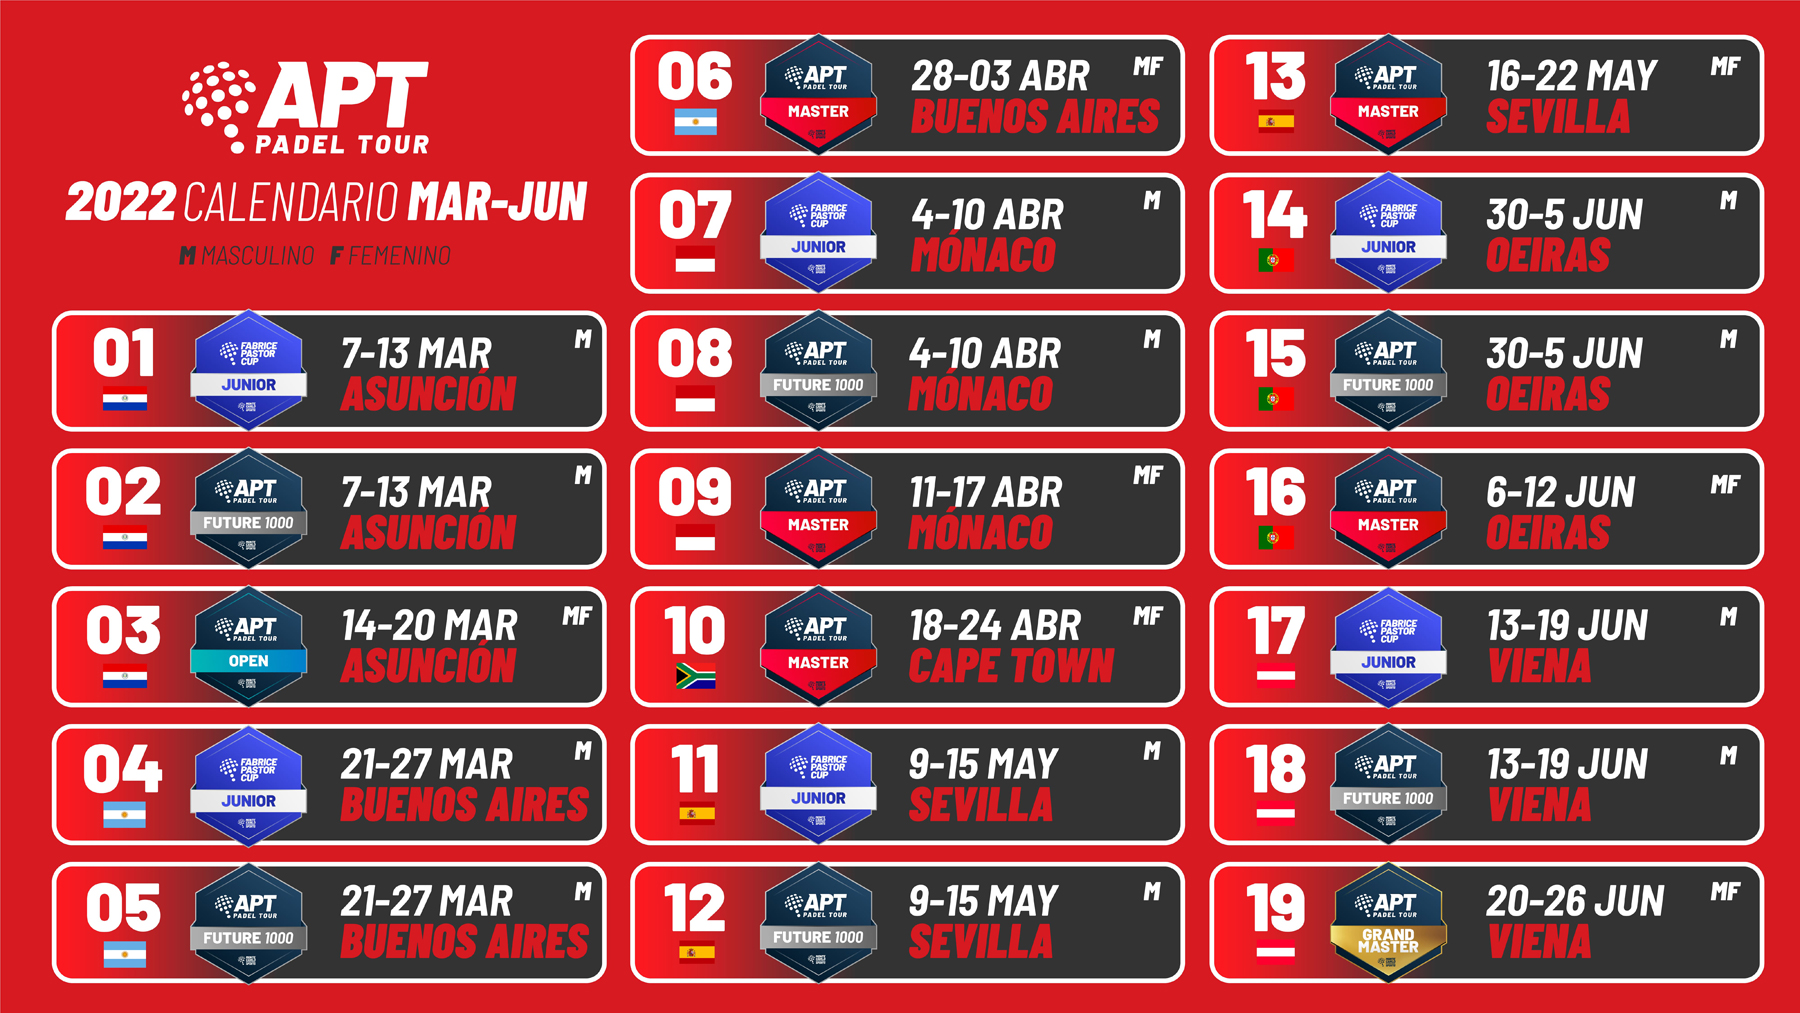 Il calendario dettagliato da marzo a giugno dell'APT Padel Tour